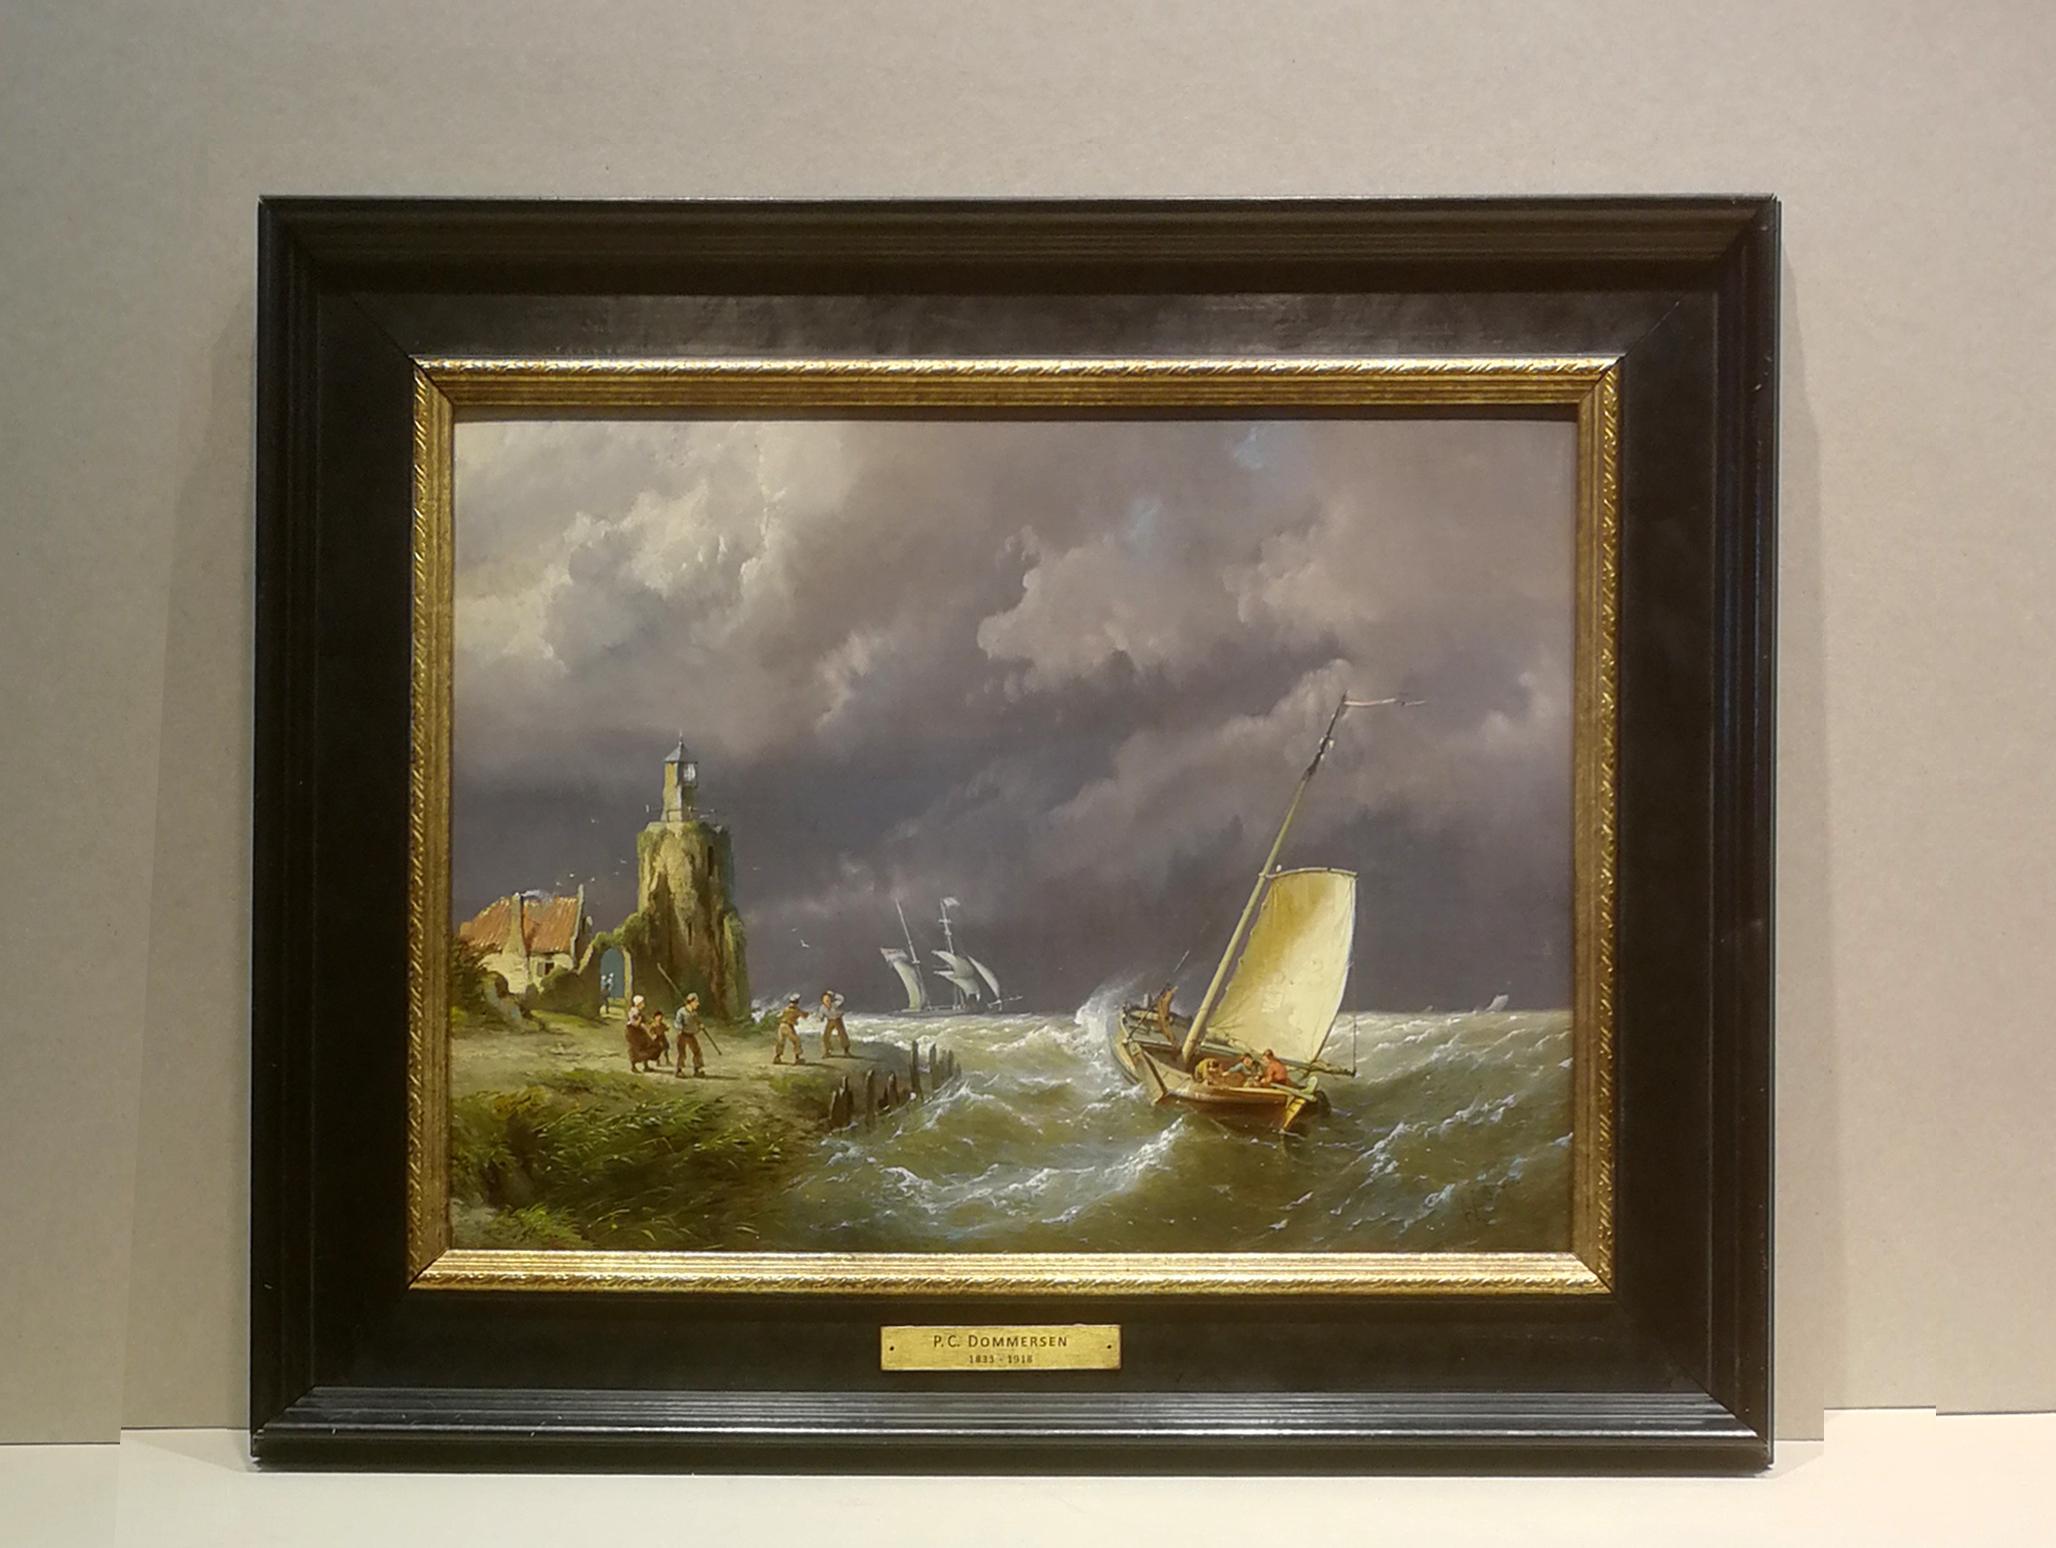 Niederlande, 1852 - 1918

Pieter Cornelis Dommersen wurde in Utrecht geboren.
Ab 1852 lebte und arbeitete er in Amsterdam, wo seine Mutter 1861 starb.
Der Maler spezialisierte sich auf das Malen von Meer- und Flussansichten sowie